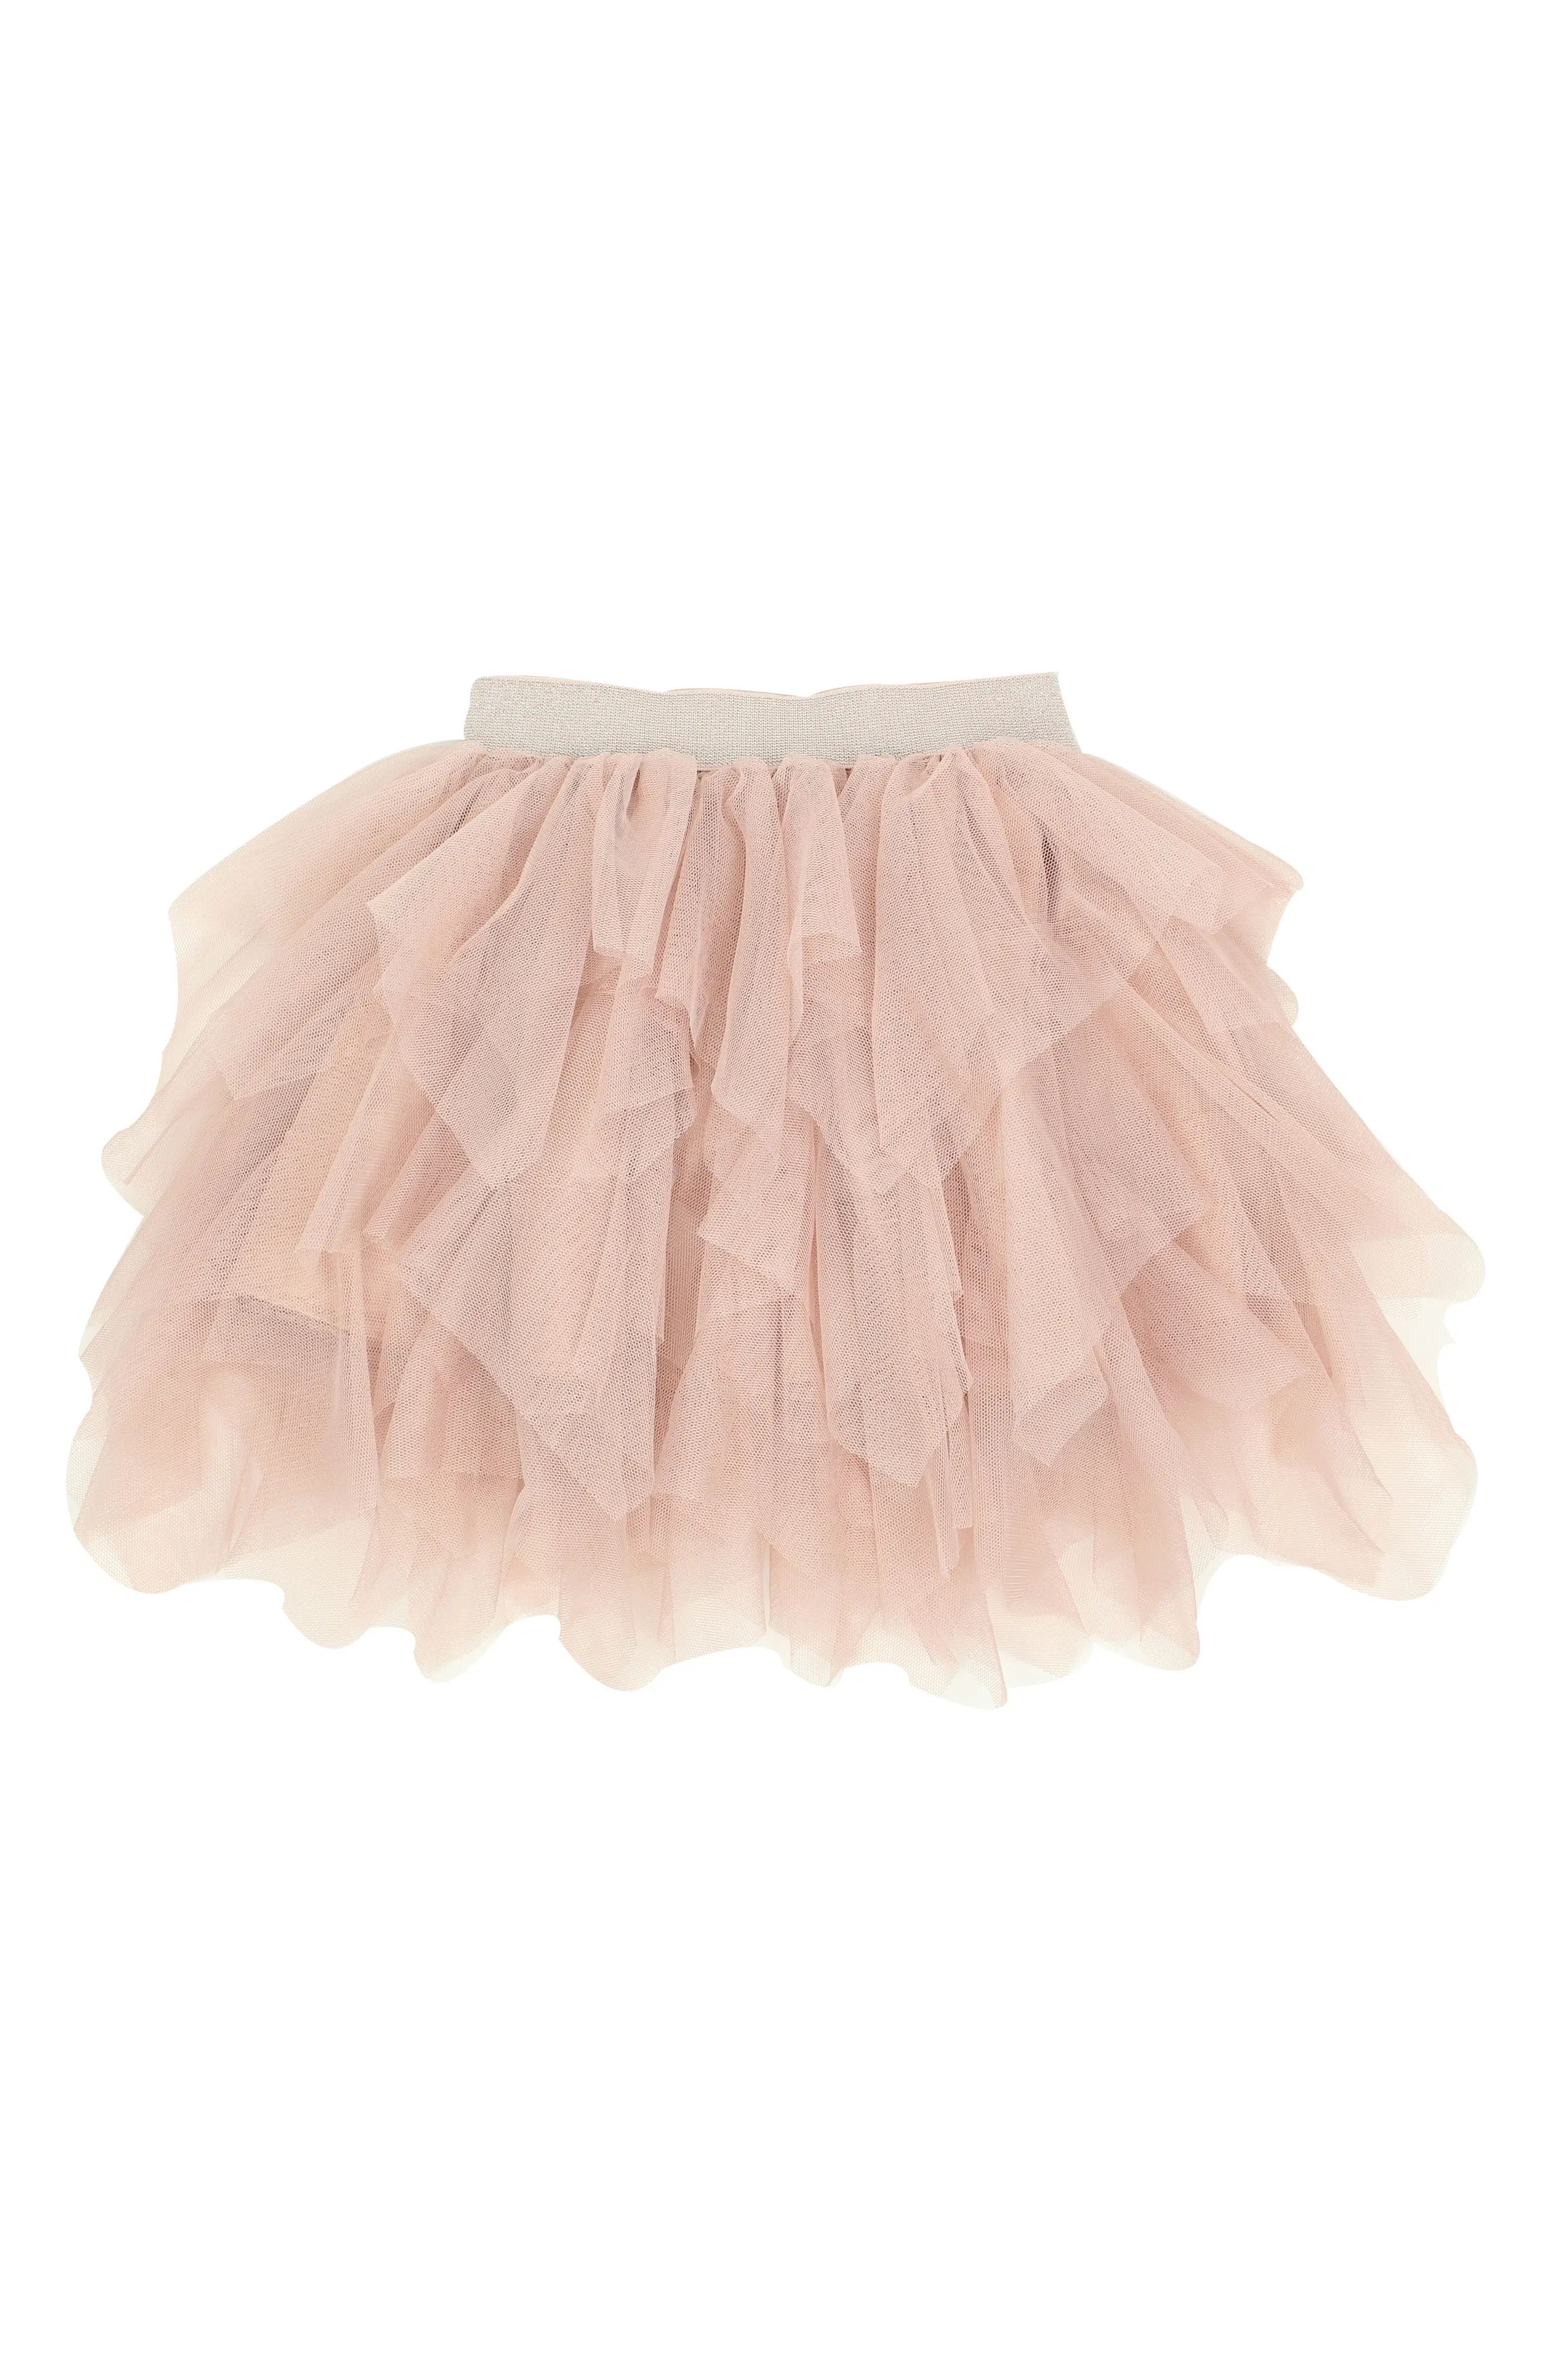 Popatu Tiered Tulle Skirt (Toddler Girls & Little Girls) | Nordstrom